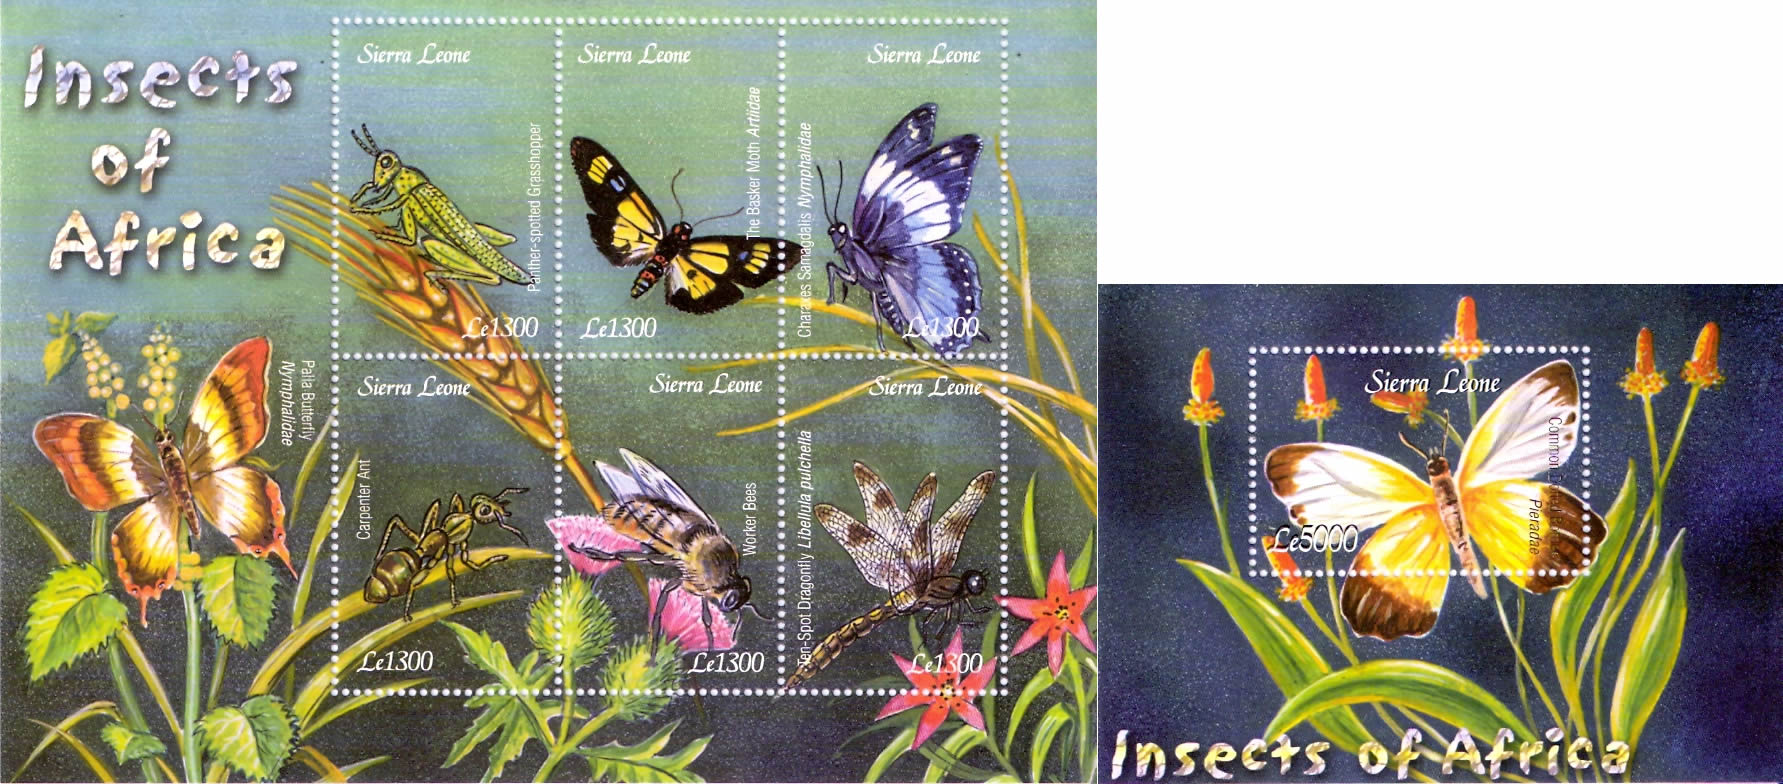 Sierra Leone 2003. Bloque y sello de Insectos de Africa.